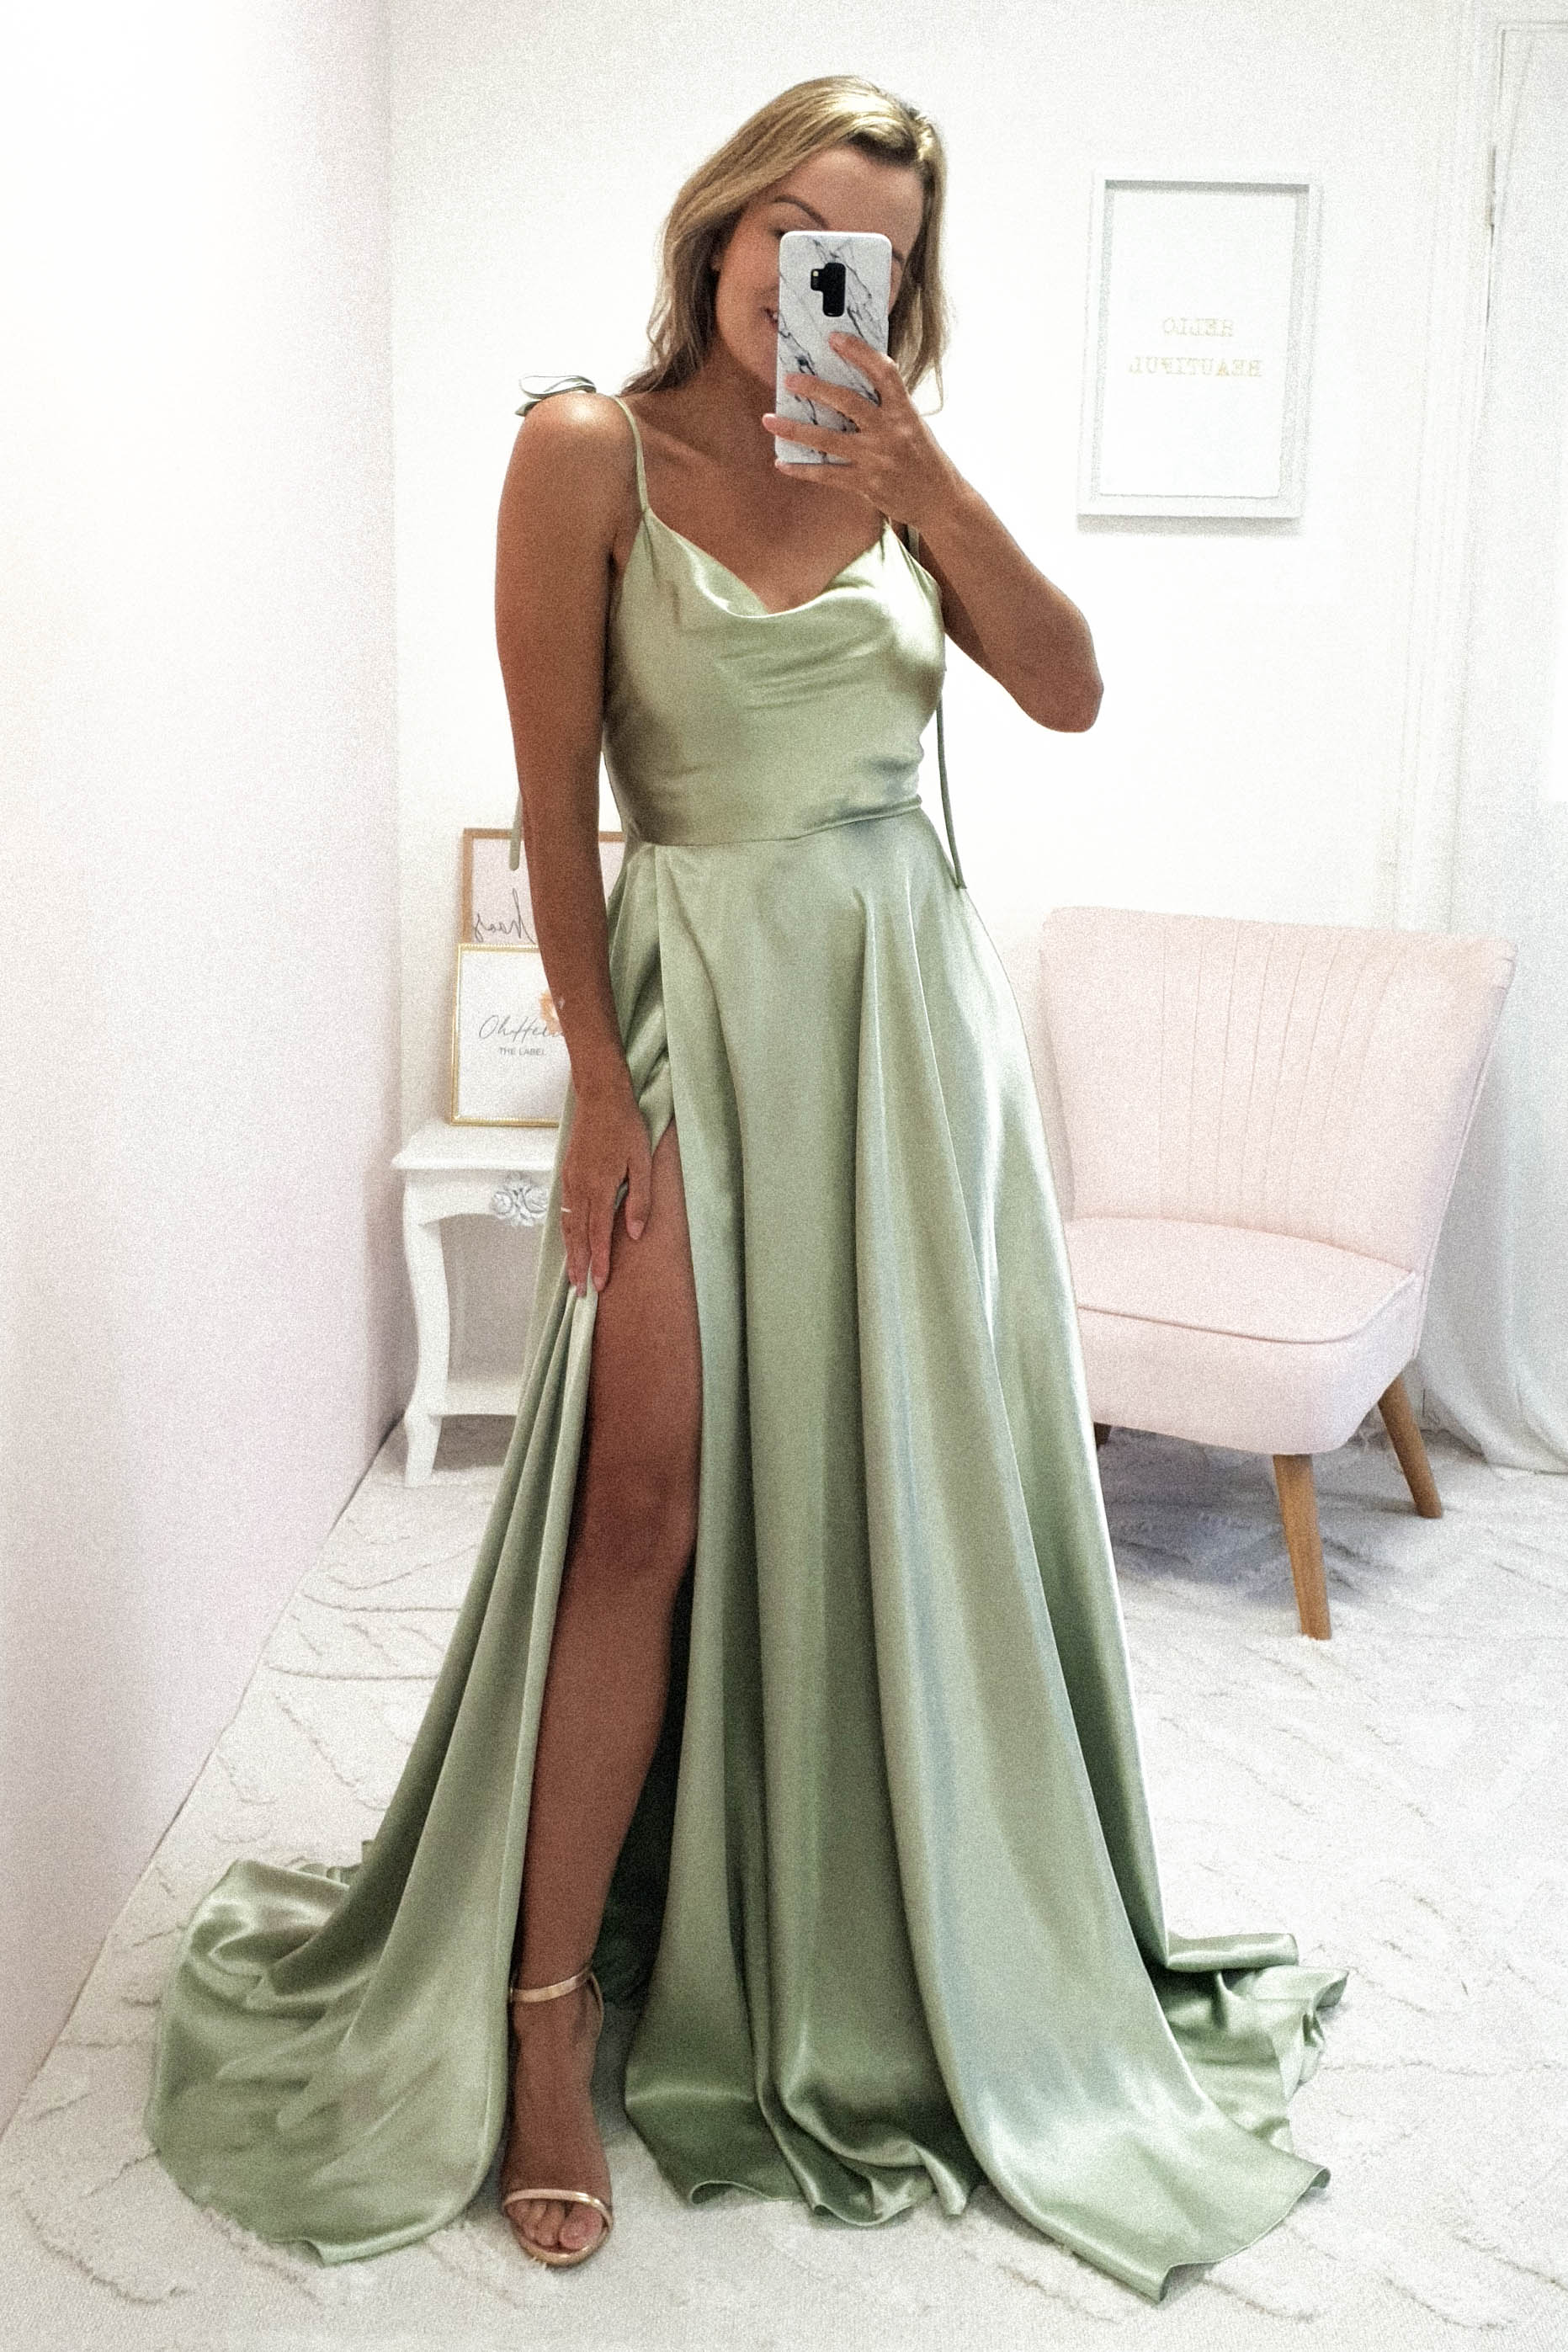 anna-cowl-neckline-gown-sage-anna-cowl-neckline-gown-sage-debs-prom-dresses-bridesmaid-28505658622017.jpg